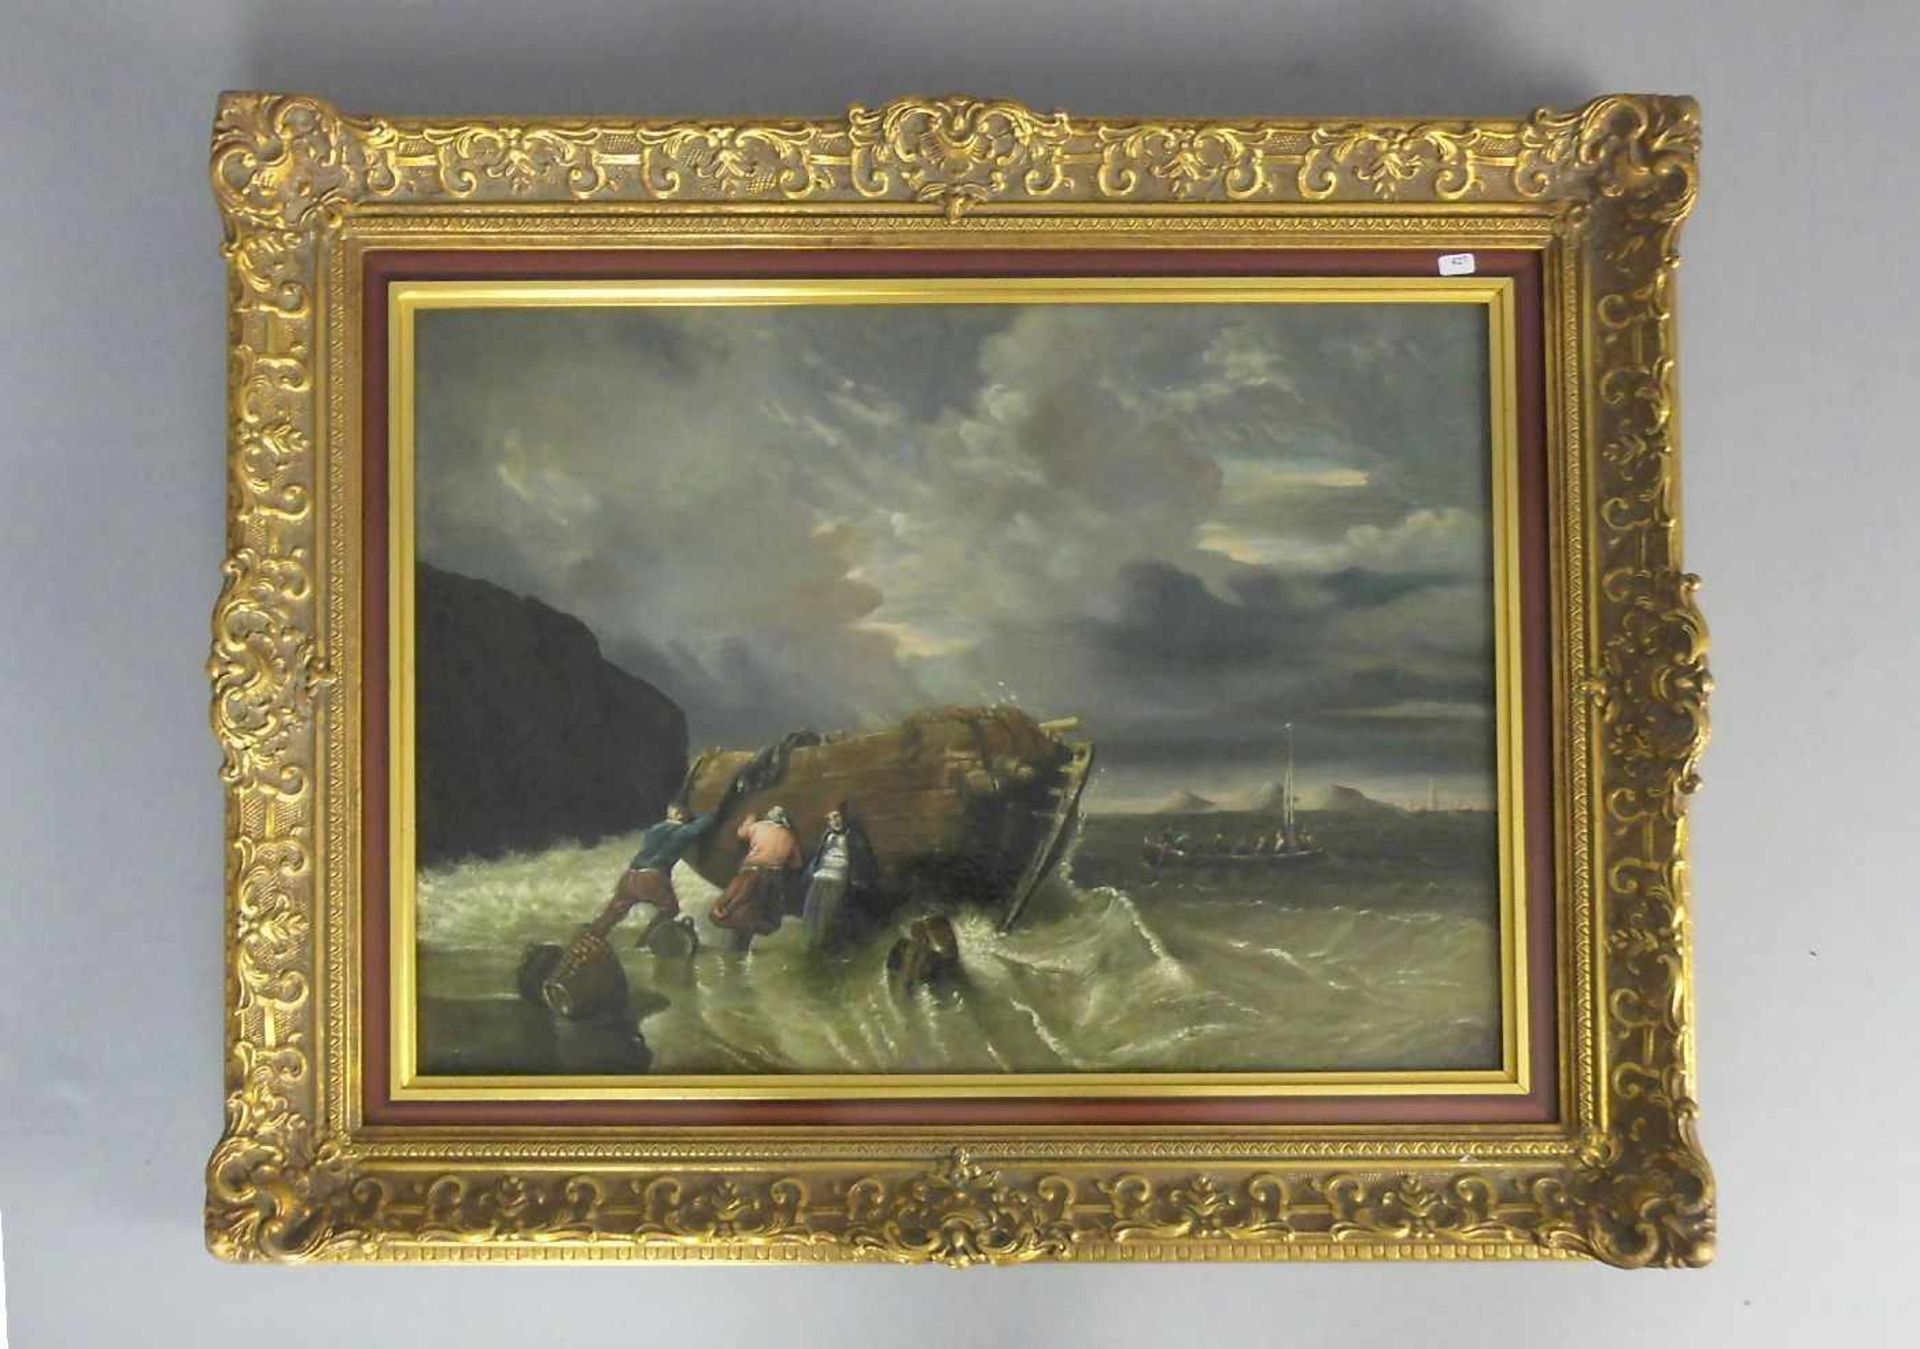 MONOGRAMMIST des 18. Jh. (A S), Gemälde / painting: "Schiffbruch an felsiger Küste", Öl auf Leinwand